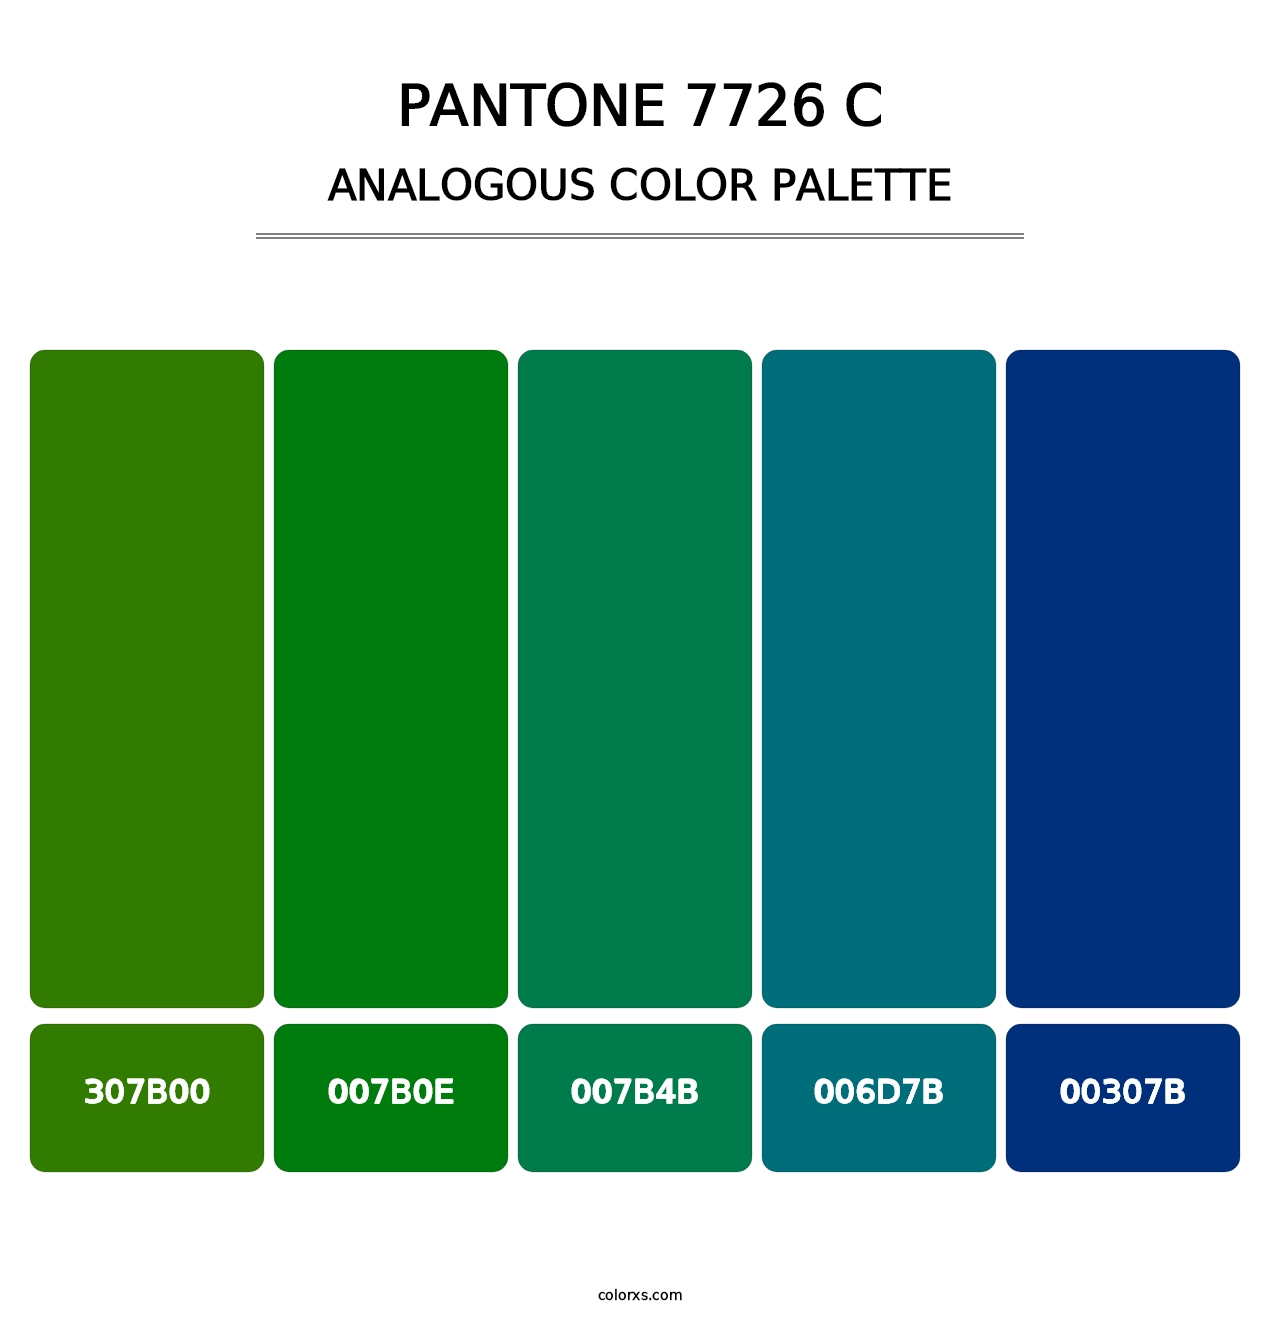 PANTONE 7726 C - Analogous Color Palette